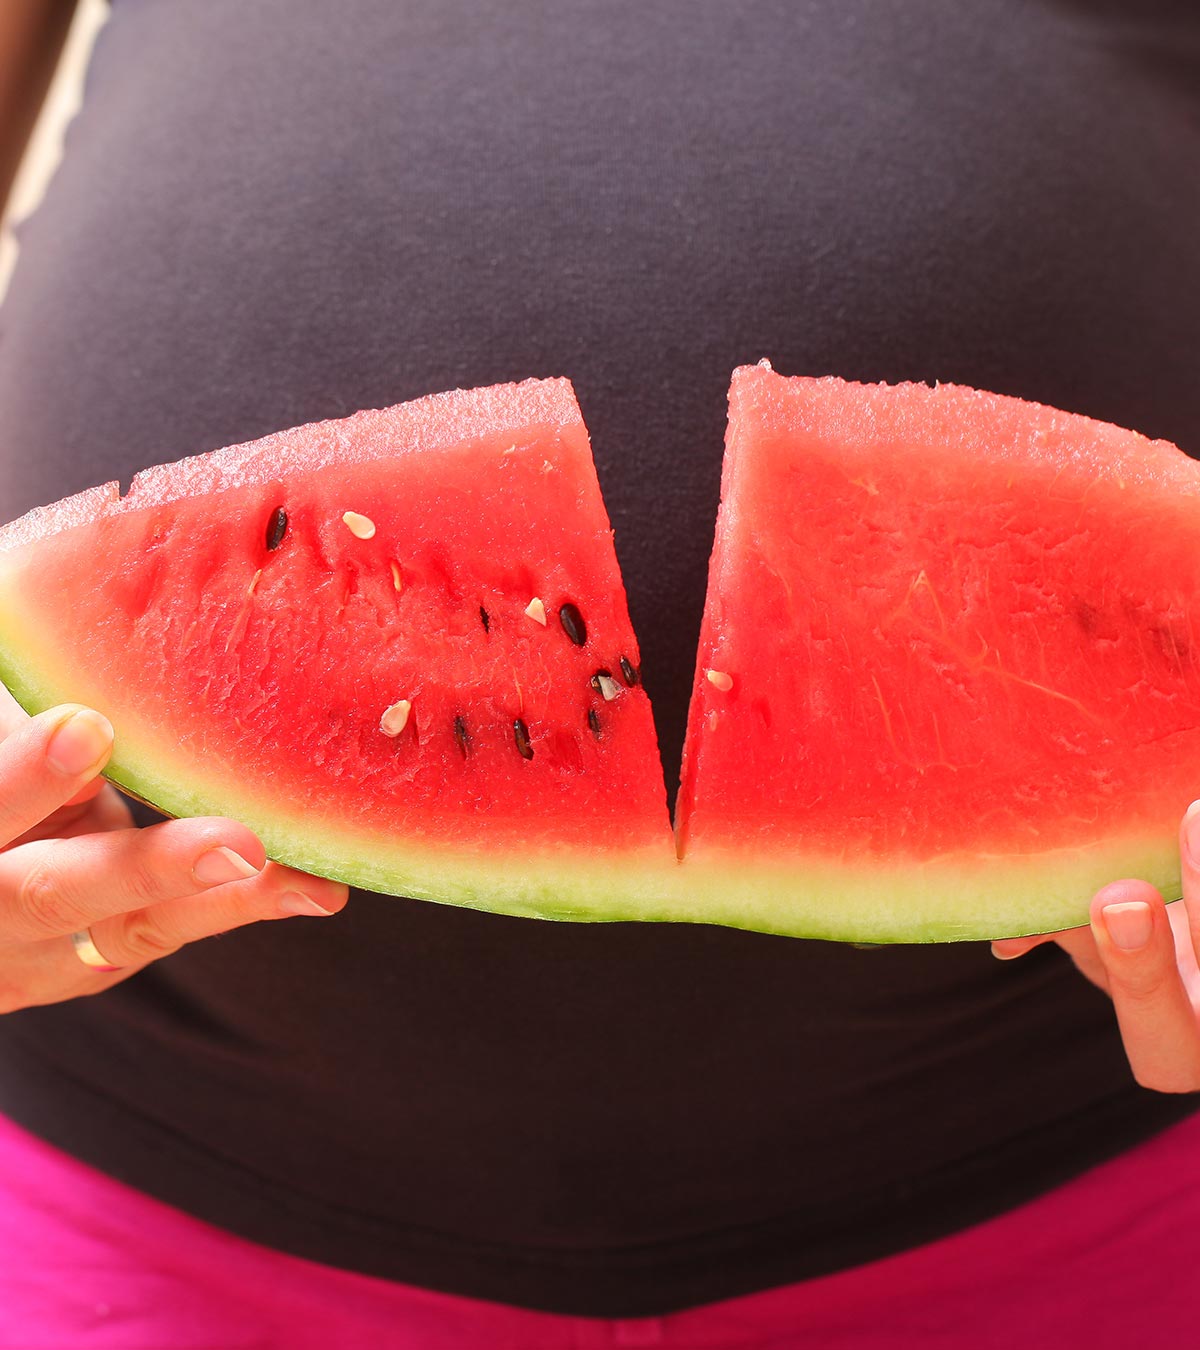 प्रेगनेंसी में तरबूज खाना चाहिए या नहीं?  | Kya Pregnancy Me Tarbuj Kha Sakte Hain